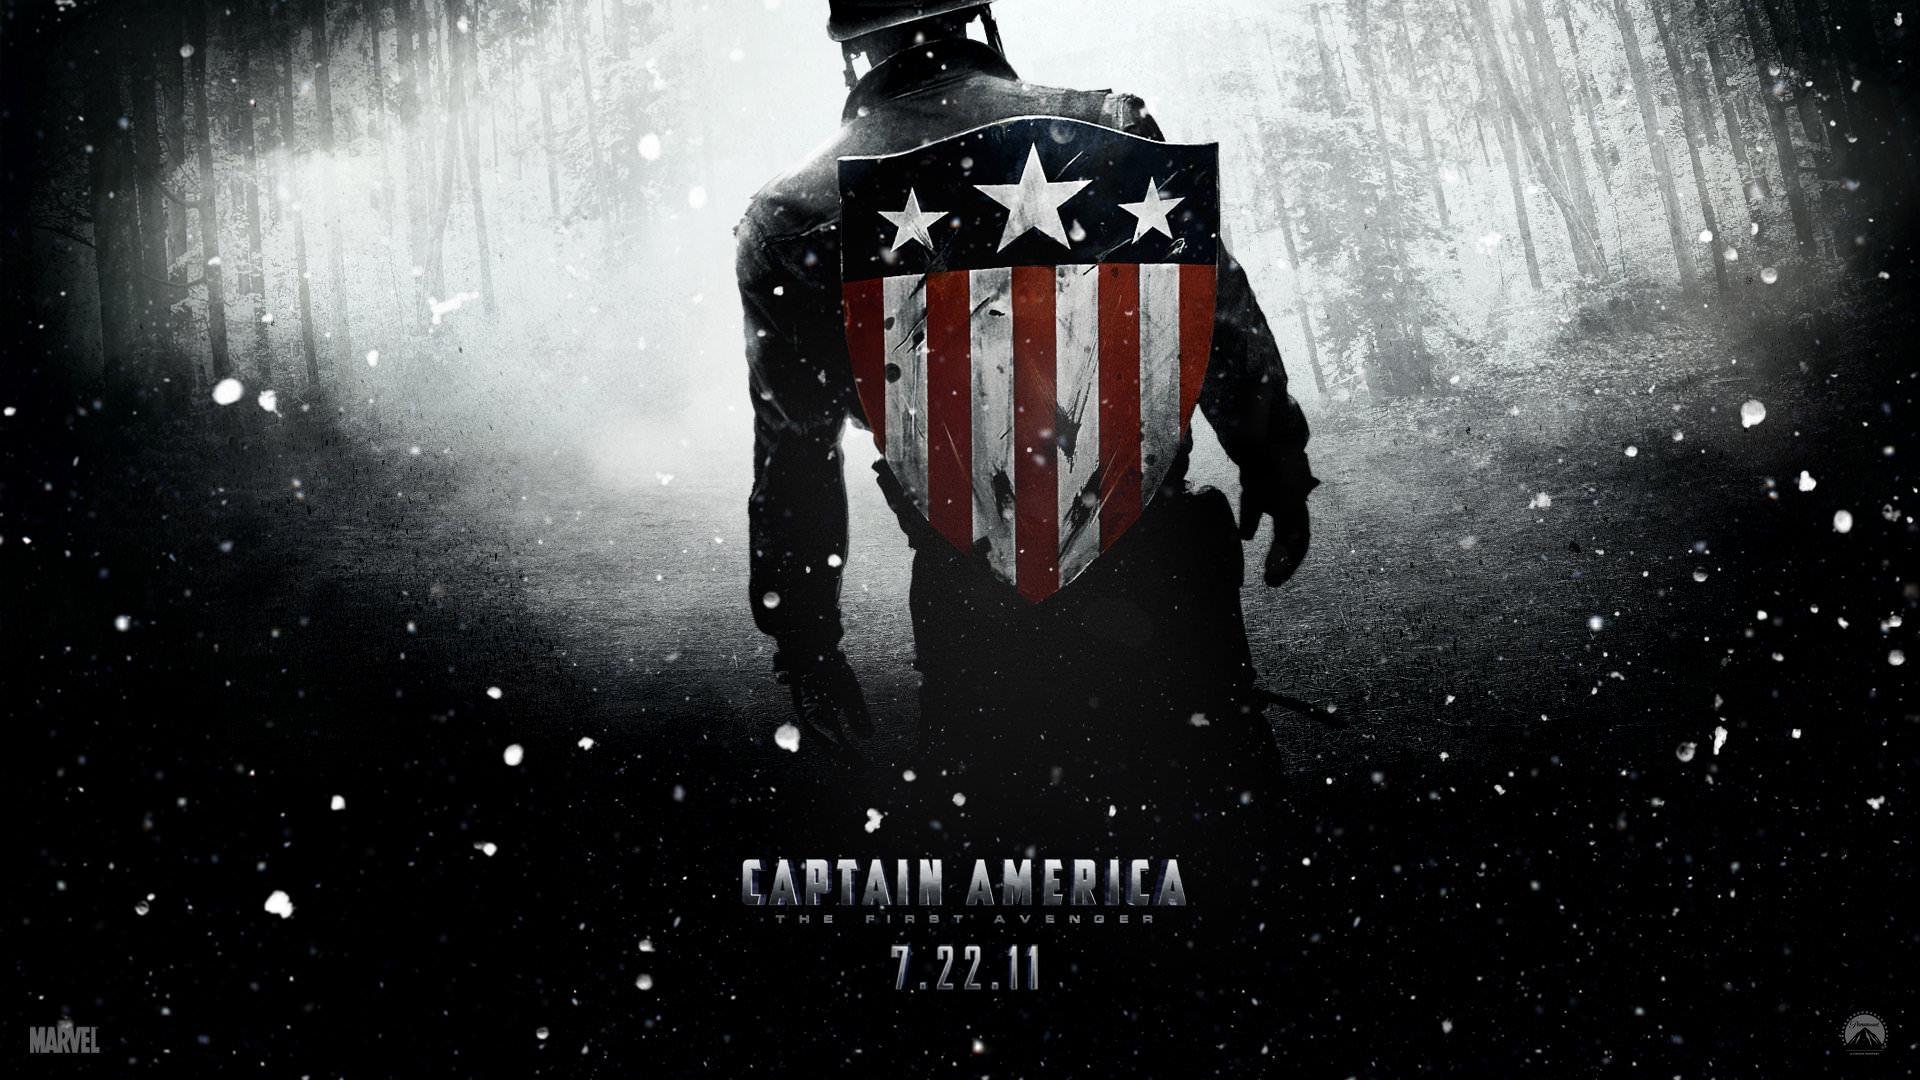 Captain America: The First Avenger wallpaper 1920x1080 Full HD (1080p) desktop background